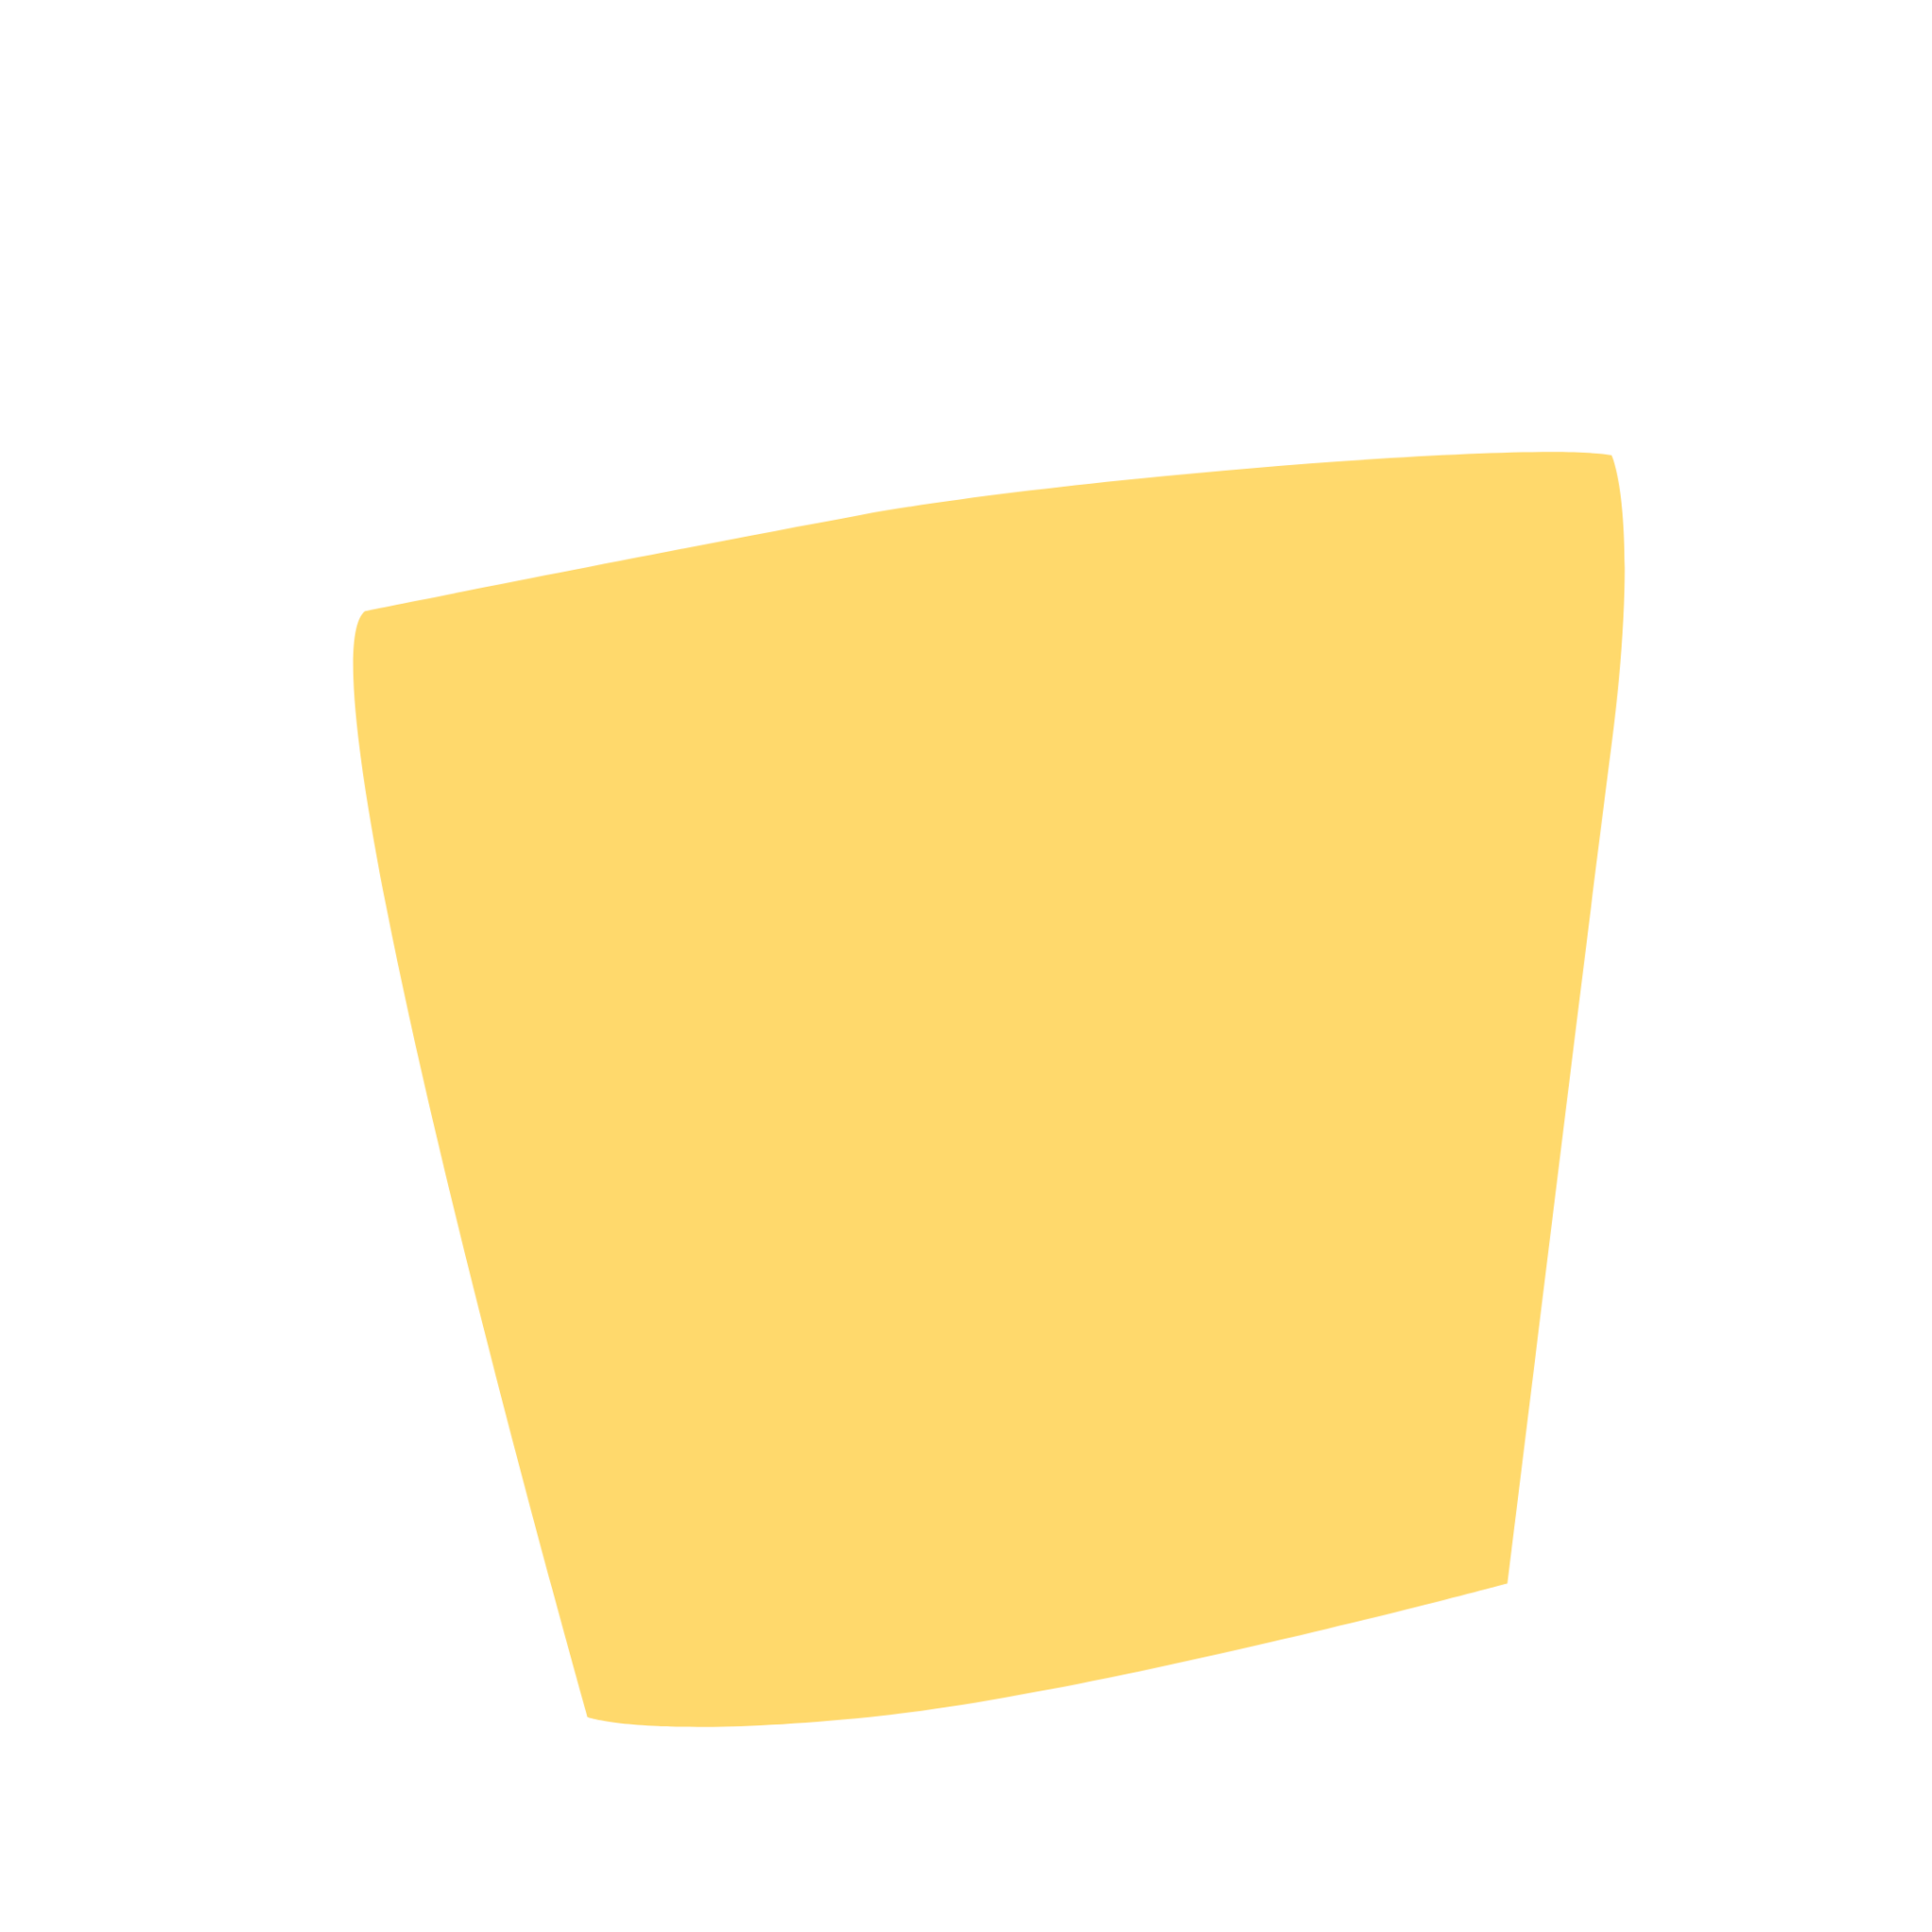 黄色いボックス